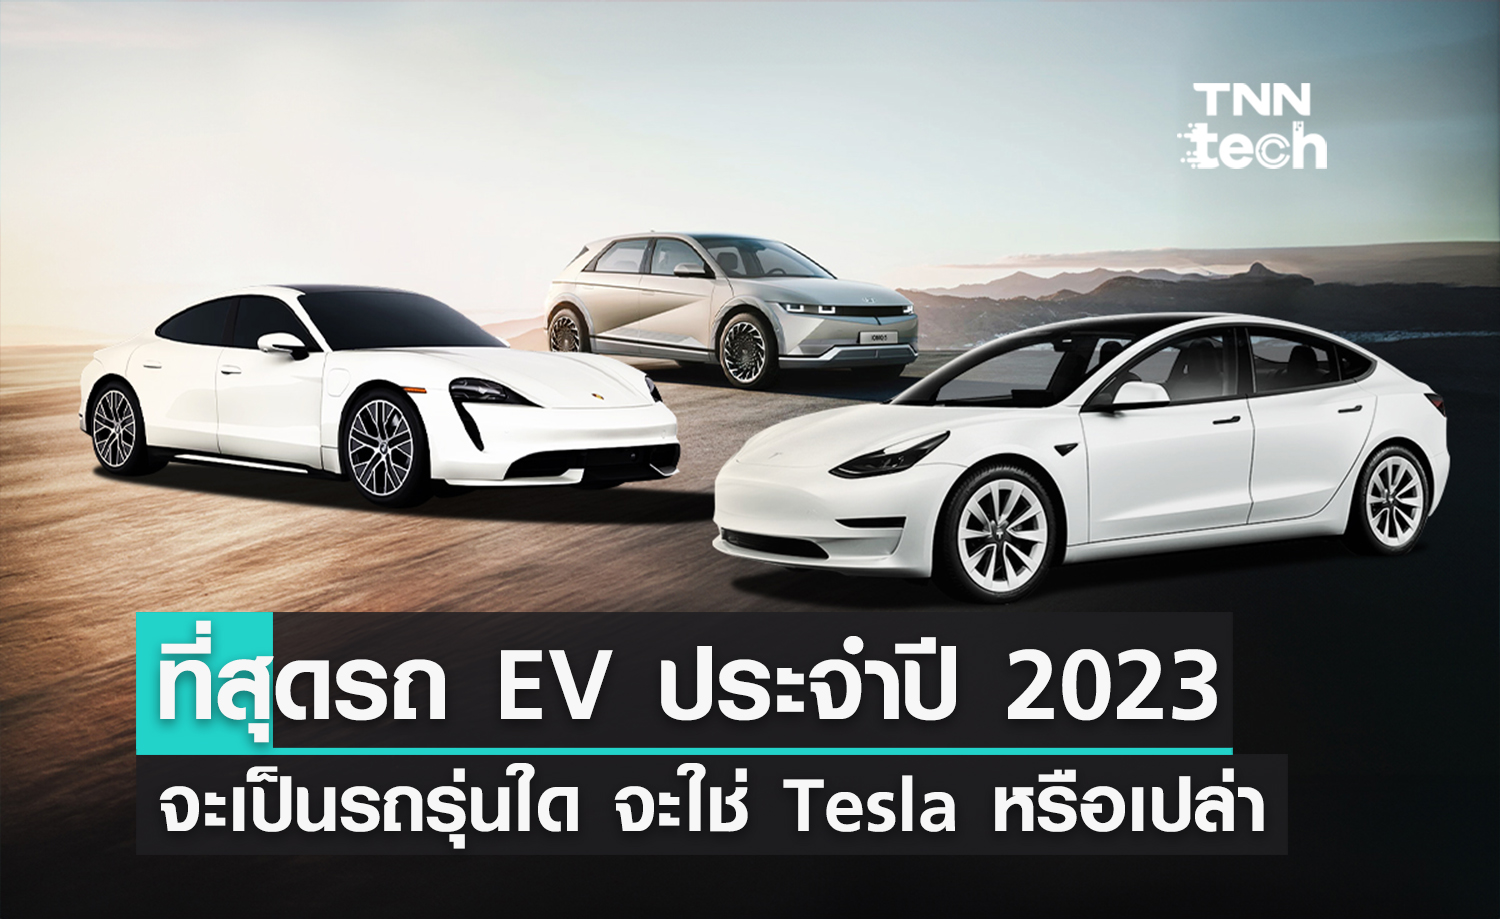 ที่สุดของรถ EV ในโลกปี 2023 คือรถรุ่นไหน ? จะเป็น Tesla หรือว่าเป็นรถจากจีน